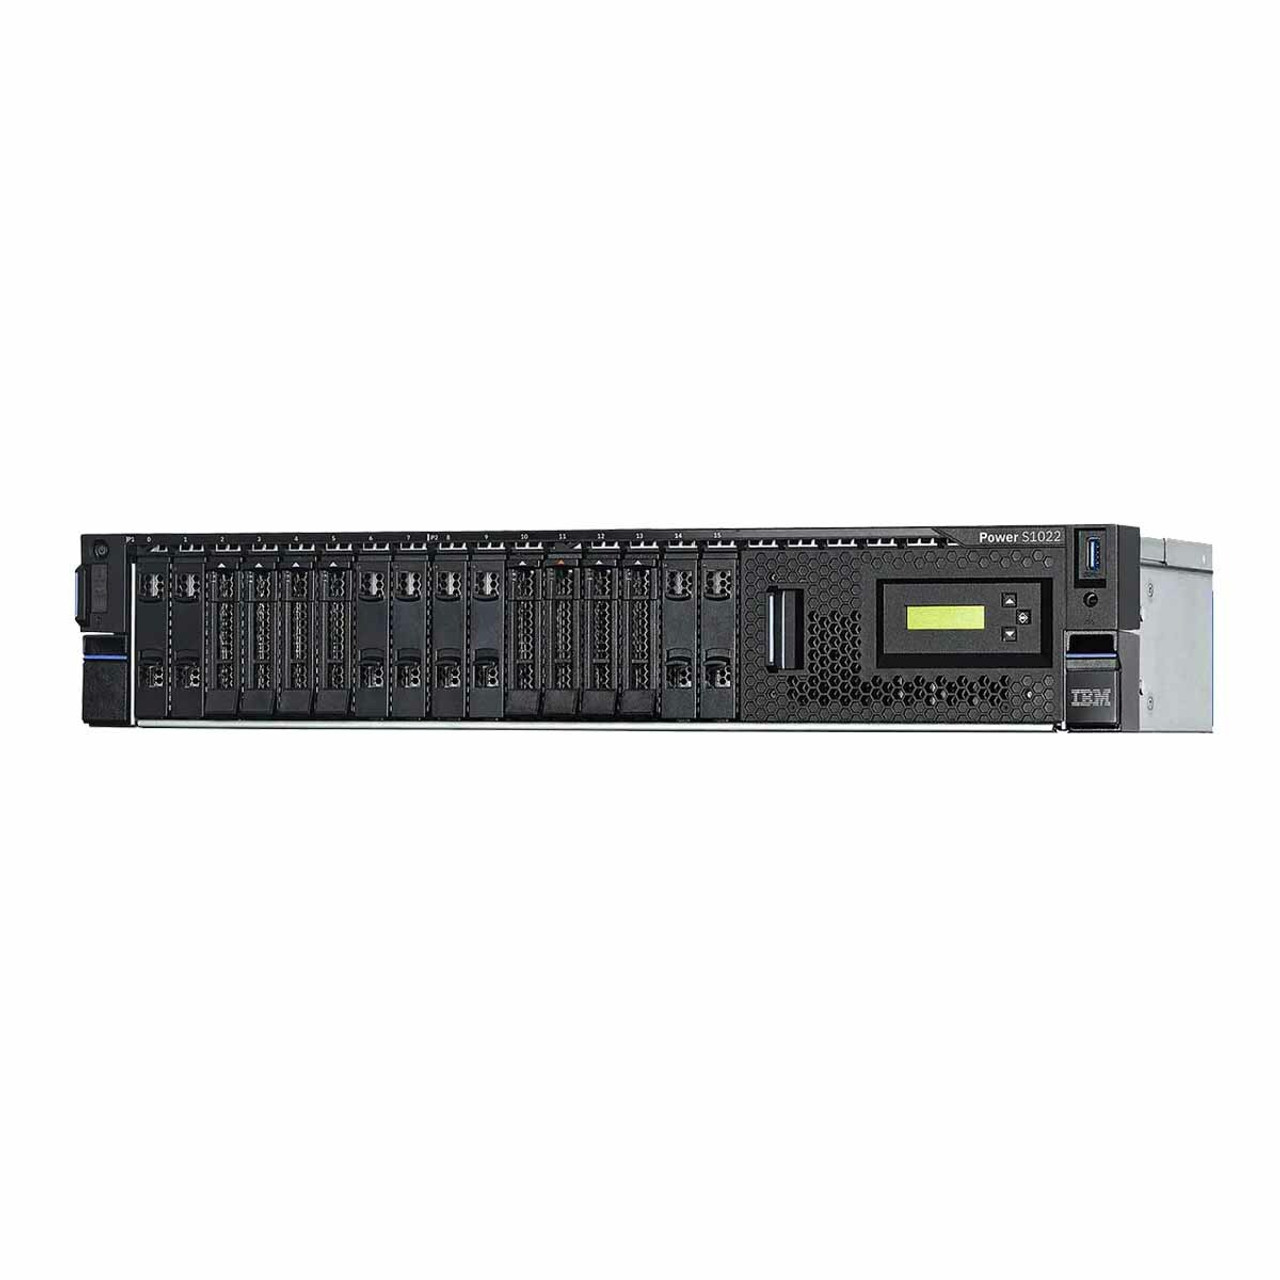 IBM Power System i S1022 Servers